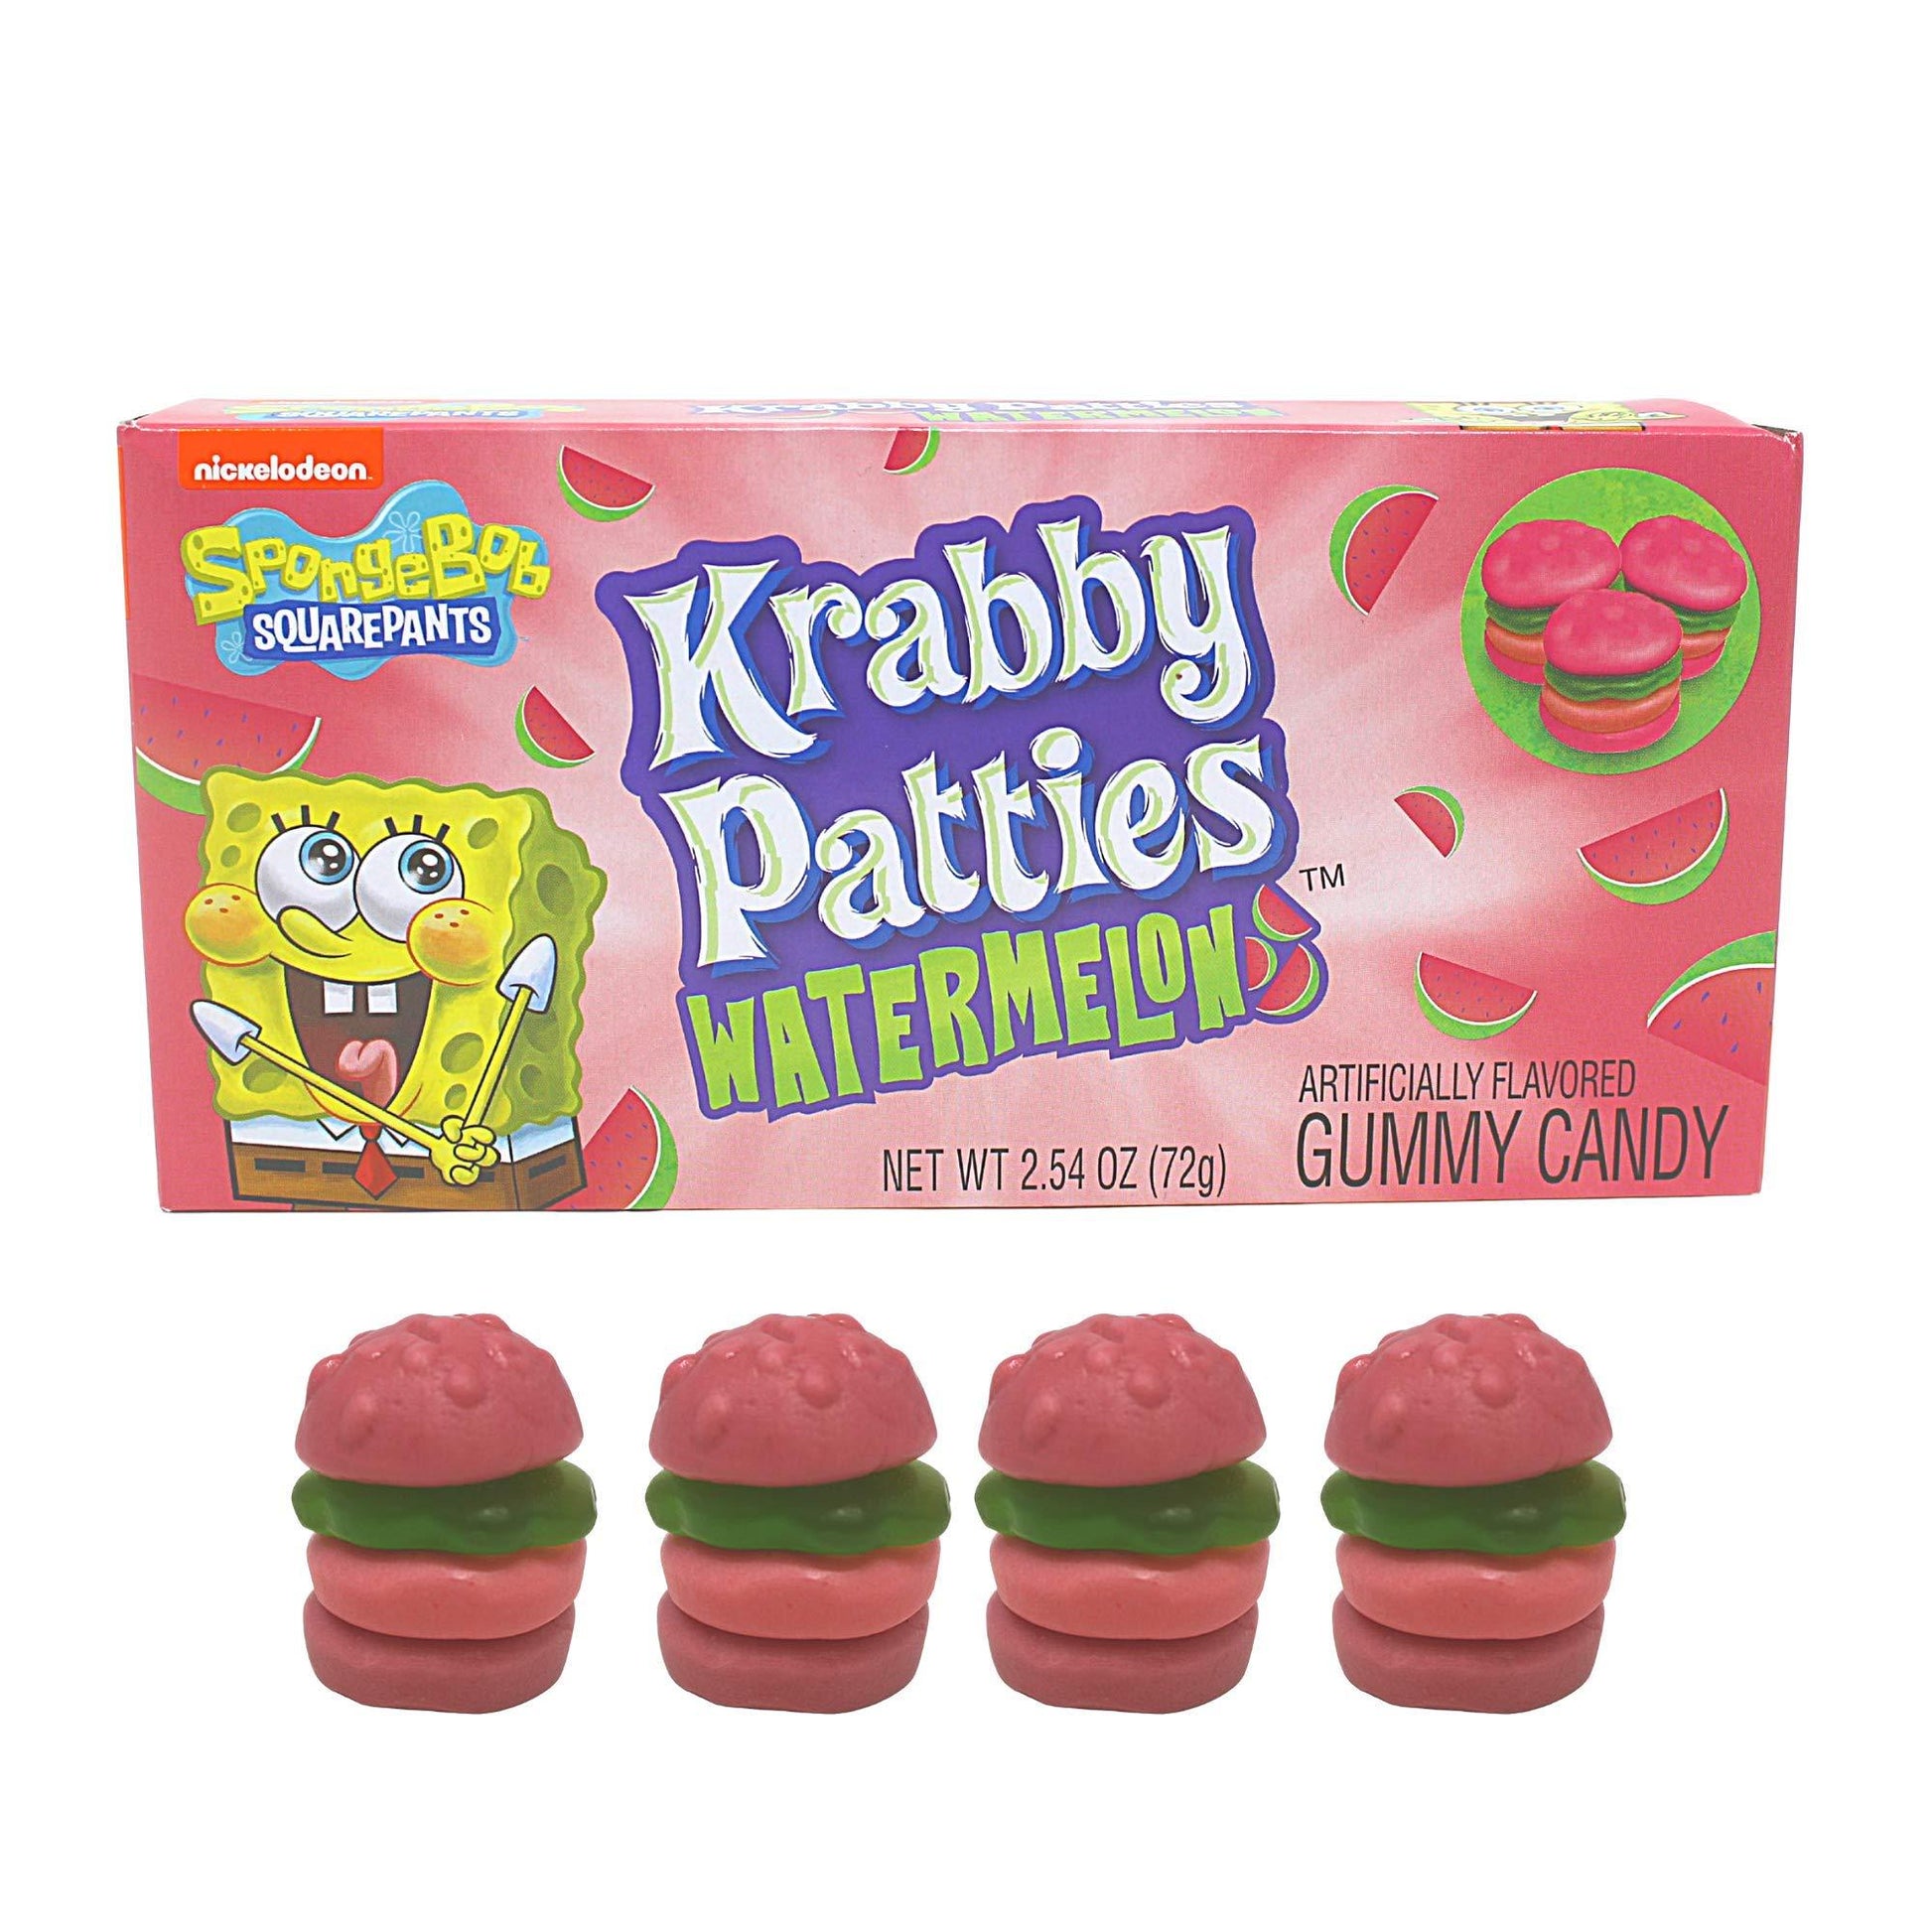 SpongeBob Krabby Patties Watermelon Gummy Candy Theatre Box - Extreme Snacks